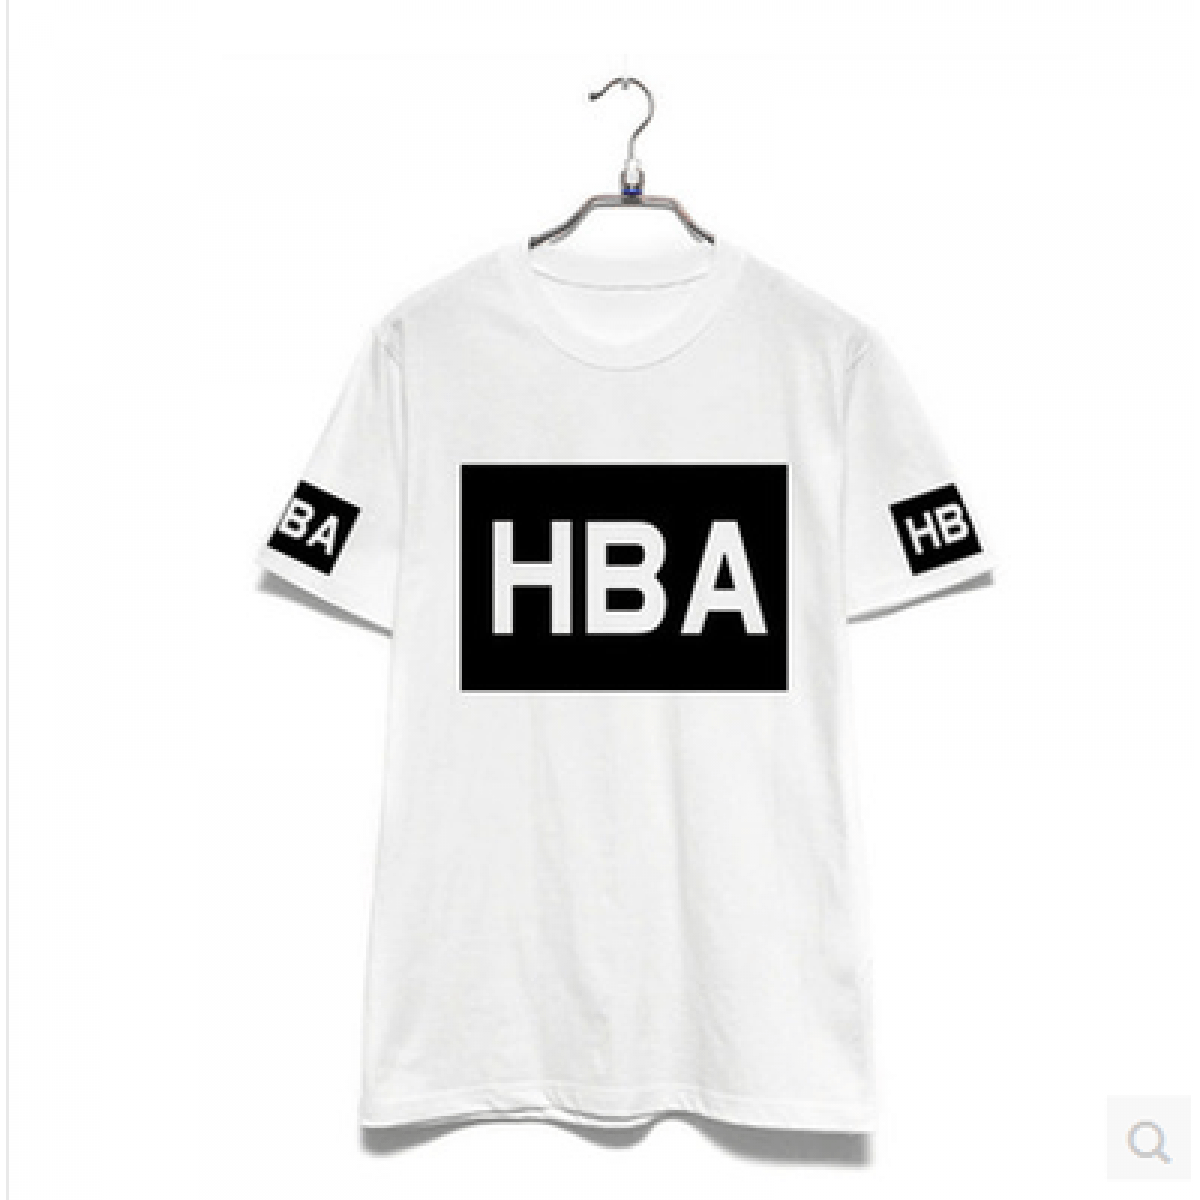 HBA Hood by Air Logo - Hba Hood By Air T Shirt With Logo